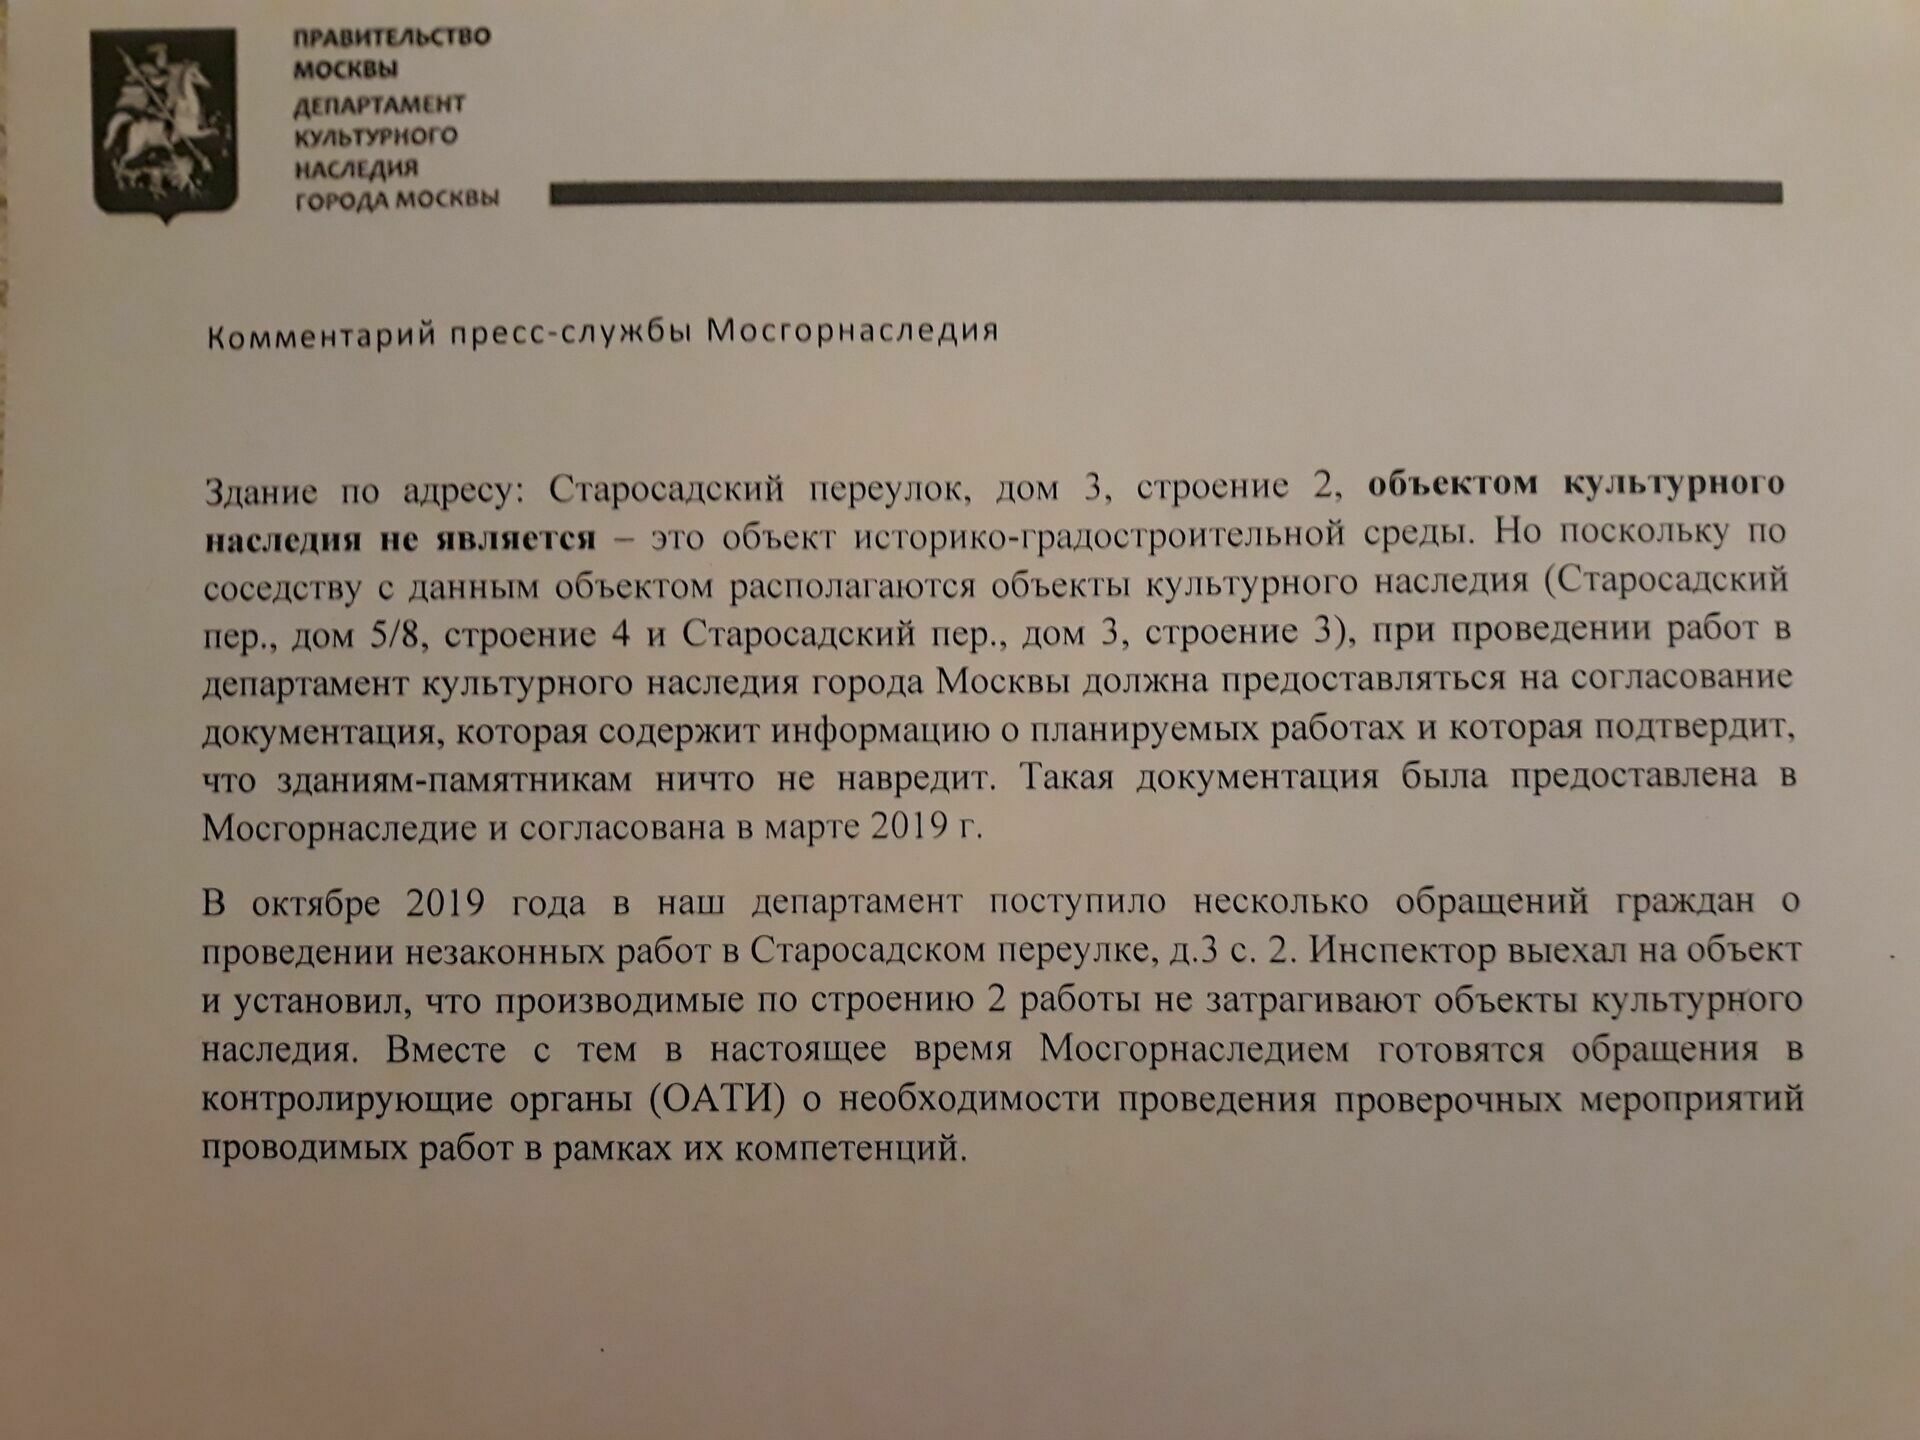 Ответ пресс-службы Департамента культурного наследия Москвы не содержит упоминания об экспертизе пристройки к историческому памятнику.